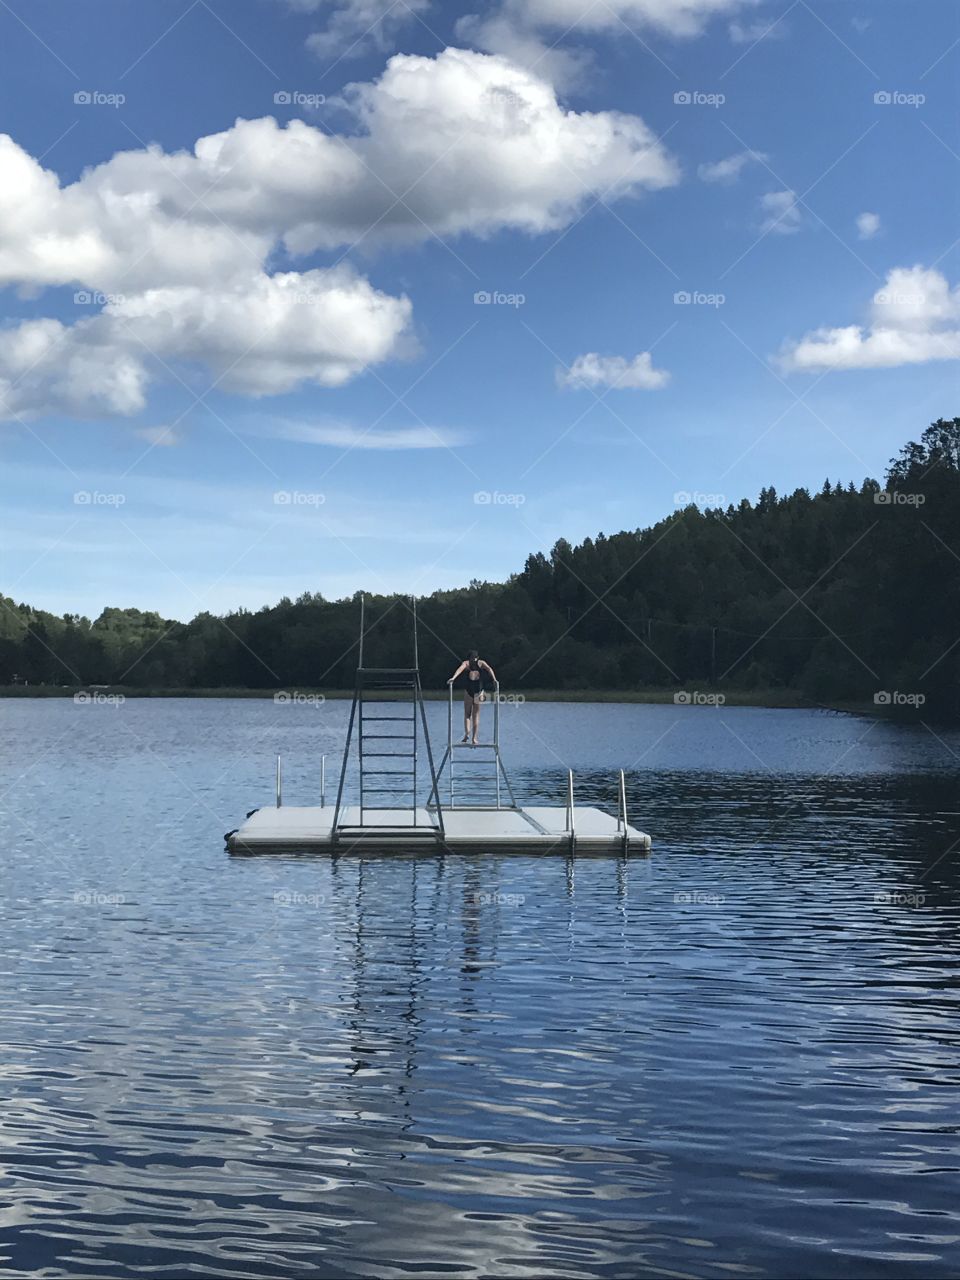 Swedish summer in Kvissleby in Sundsvall